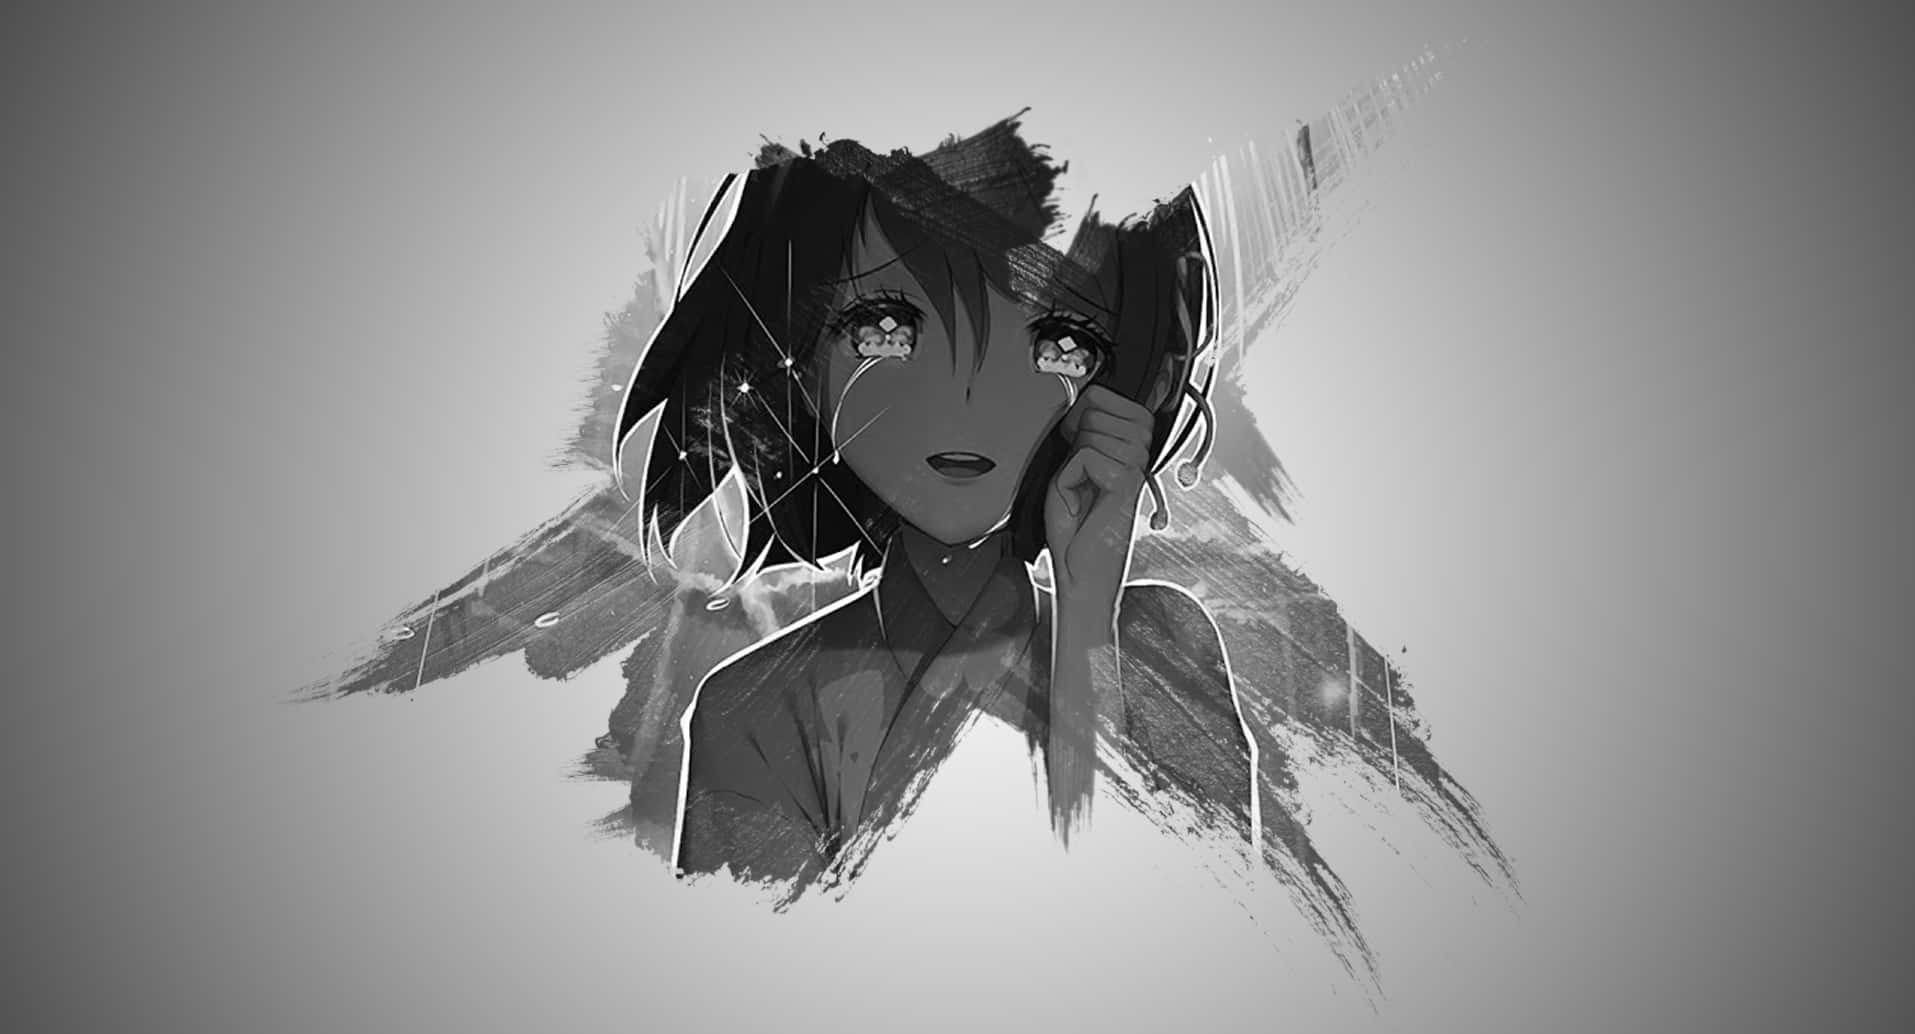 Black And White Anime Girl Crying Landscape Minimalist Background